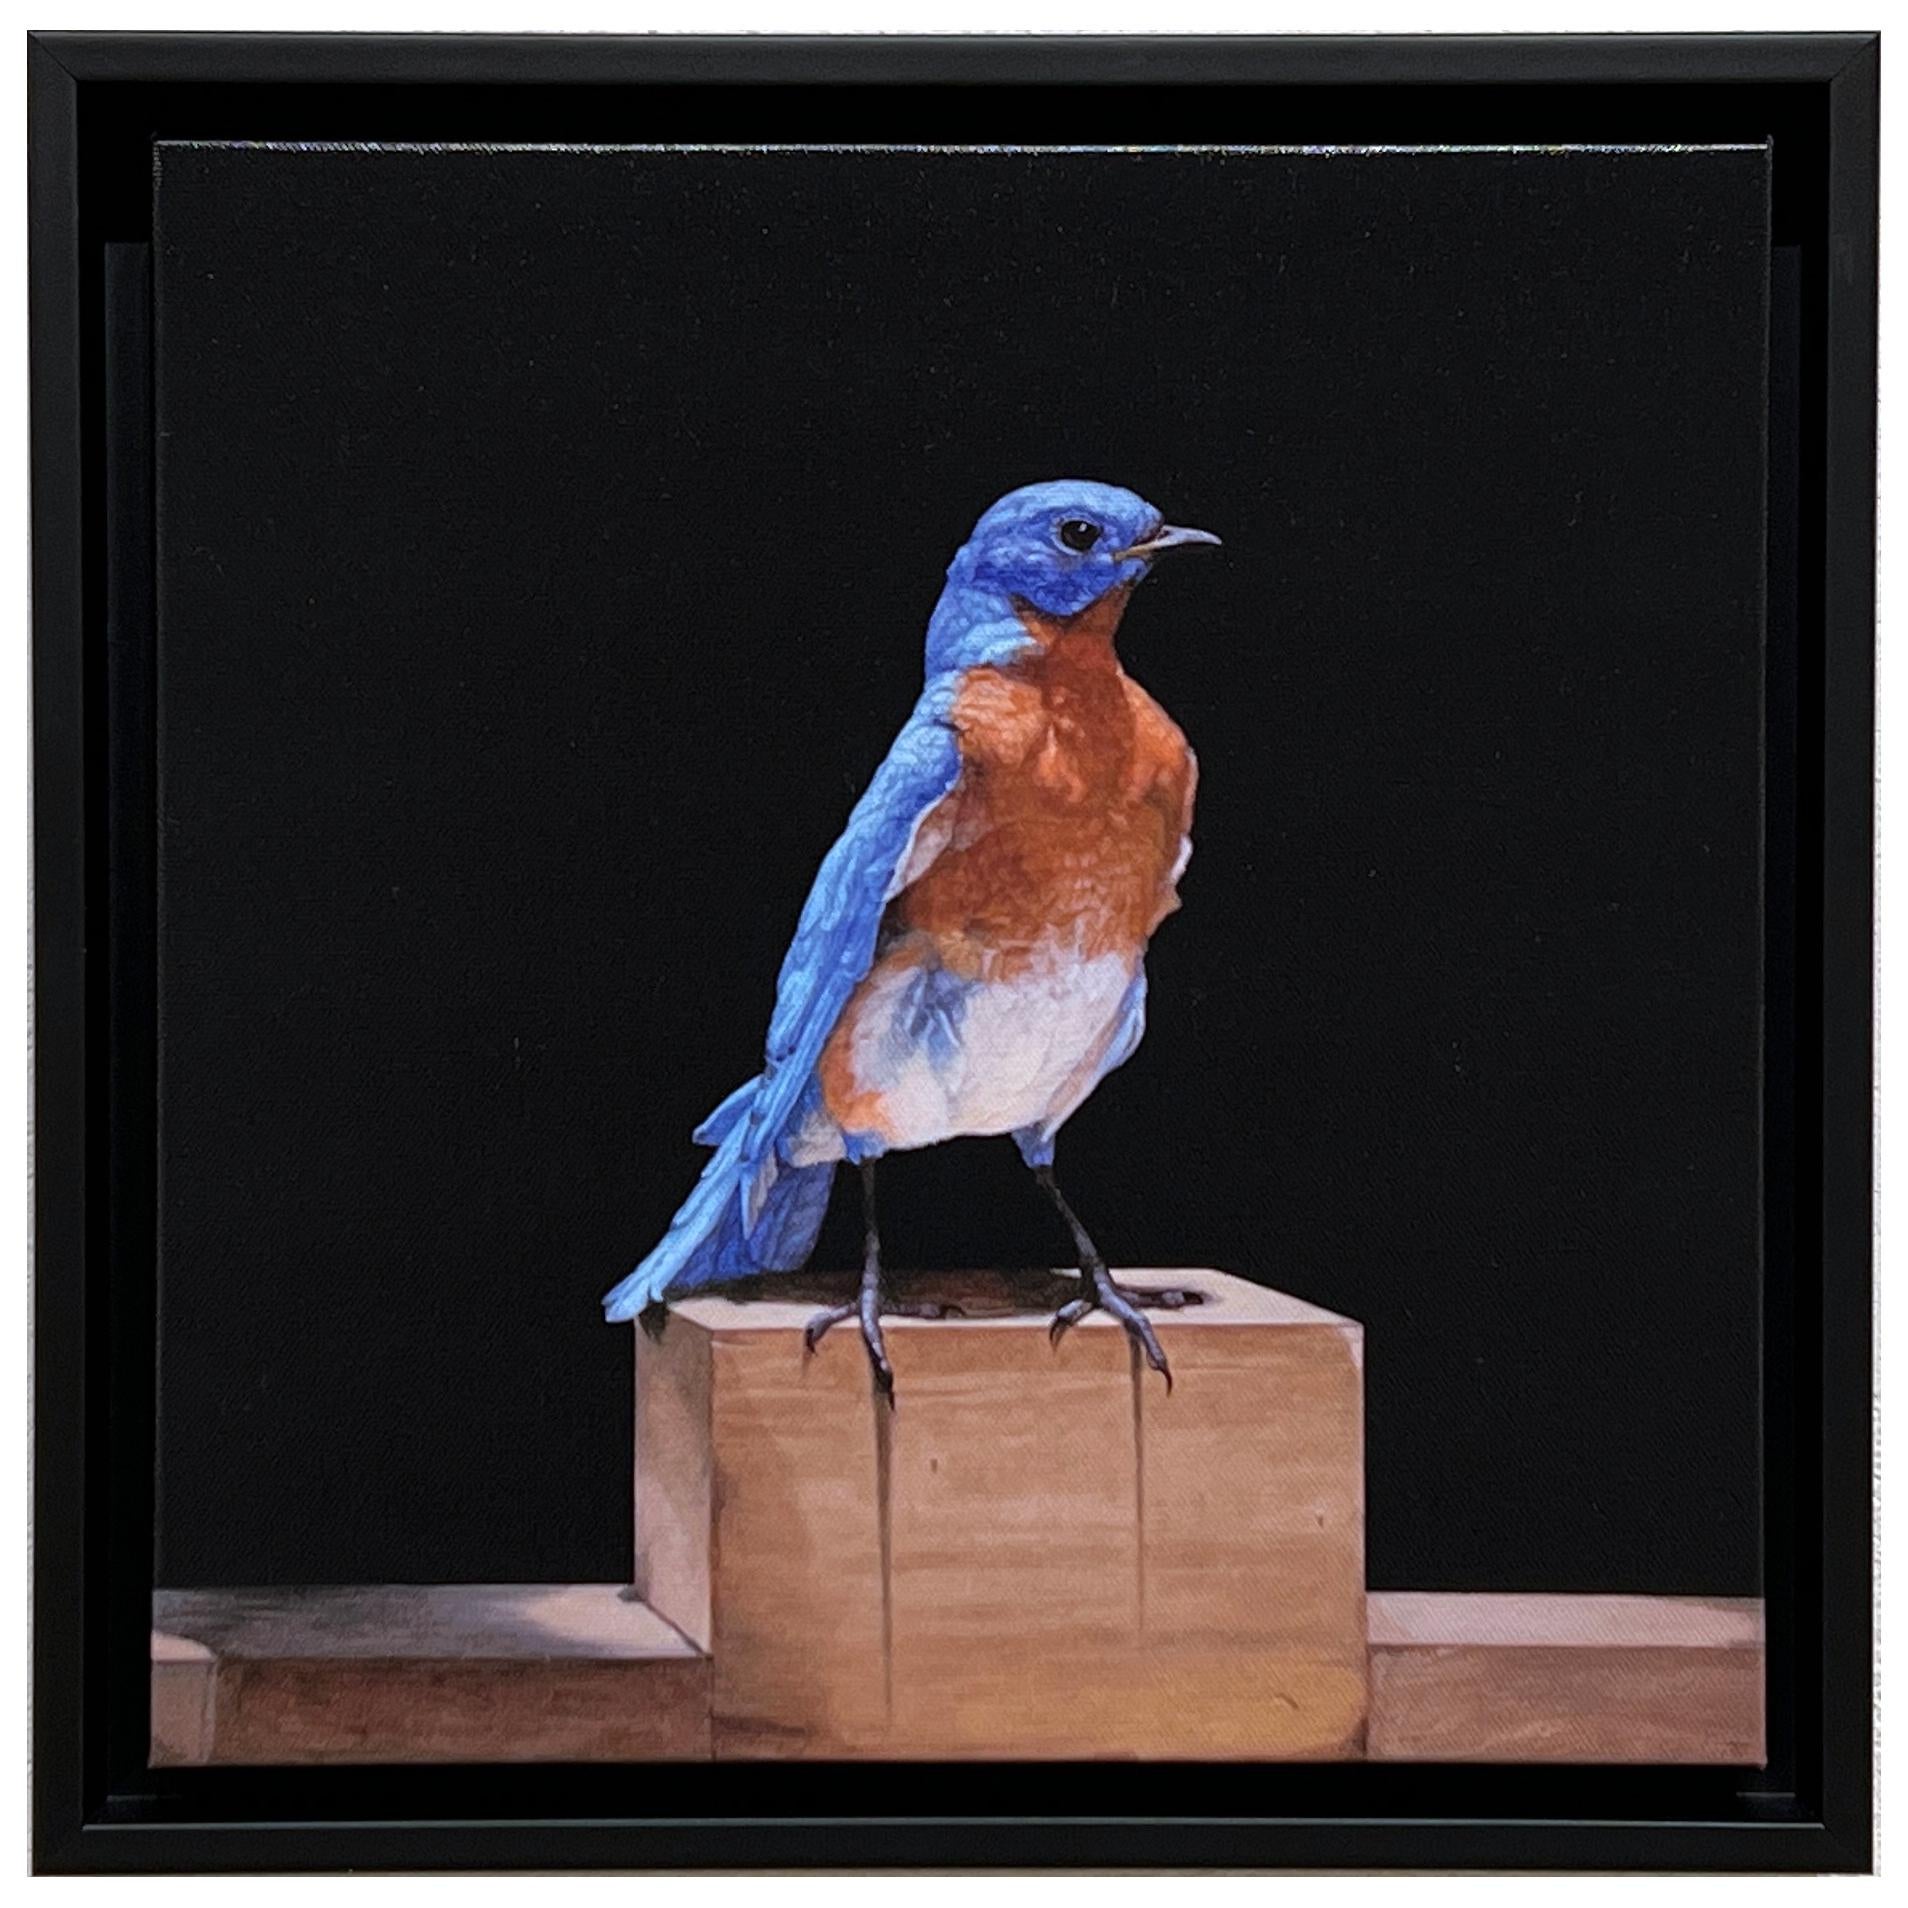 Patricia Traub Animal Print - EASTERN BLUE BIRD - Contemporary / photorealism / animal print